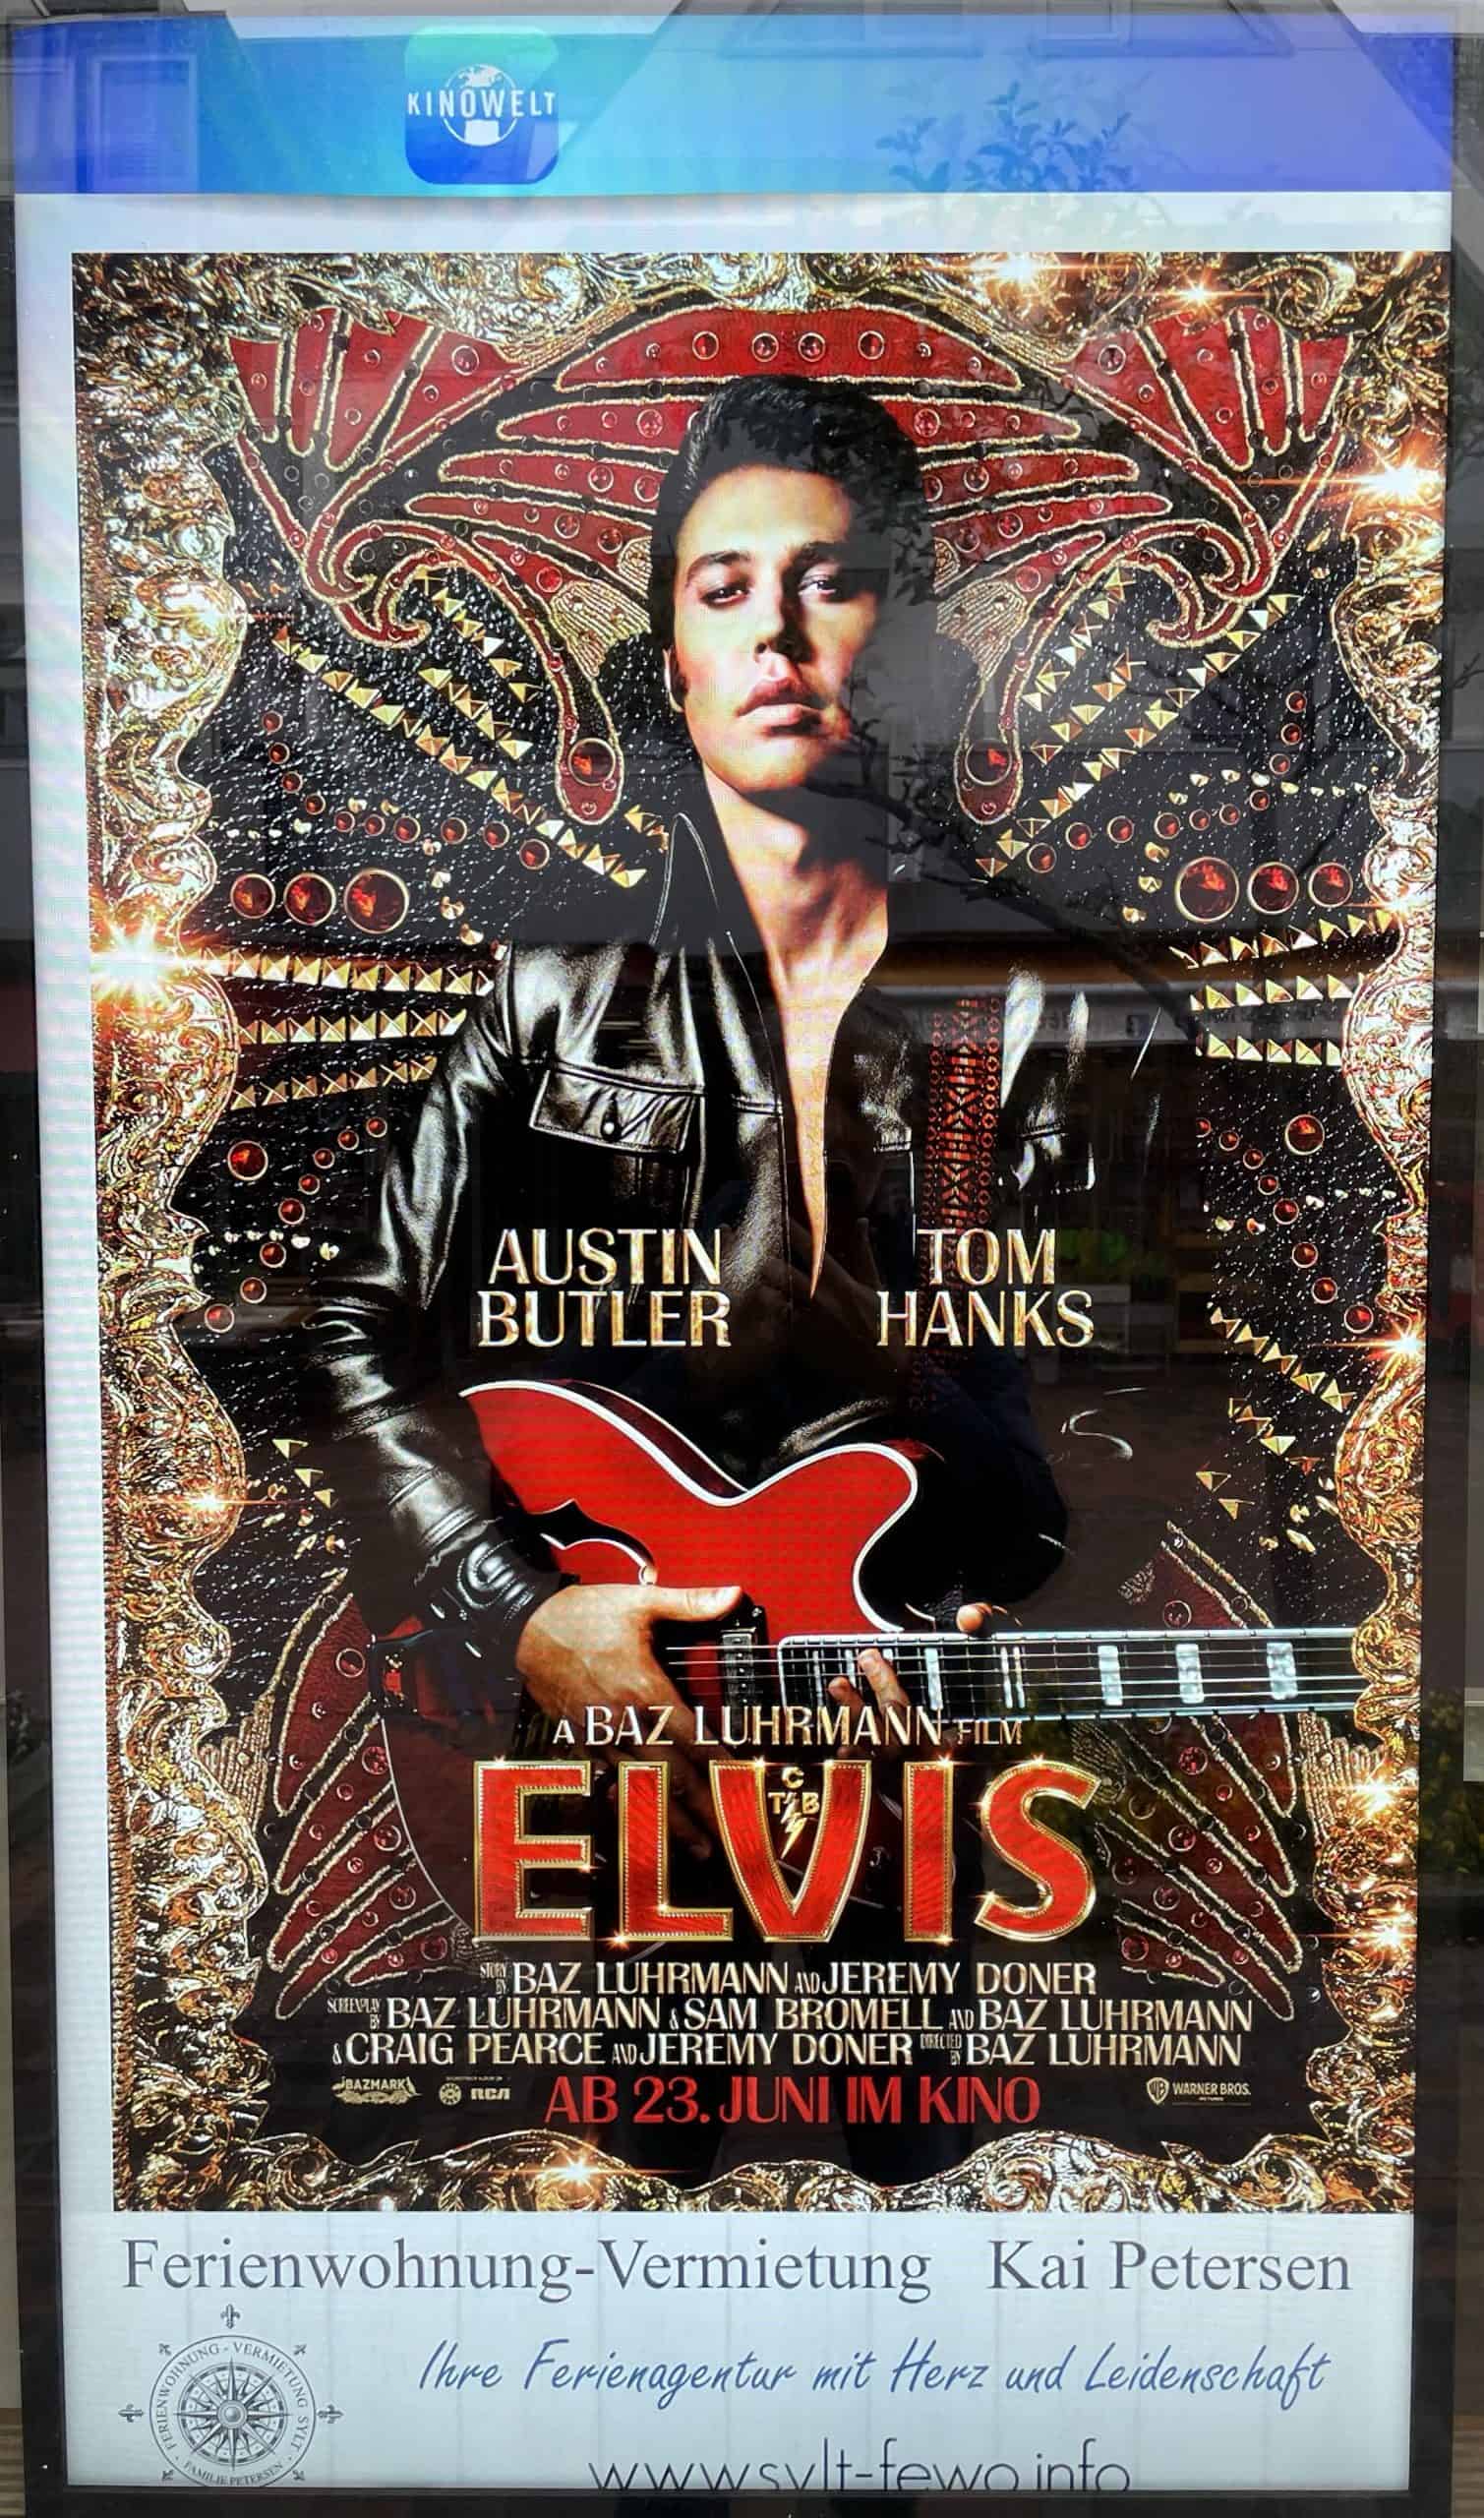 Plakat des Elvis-Films